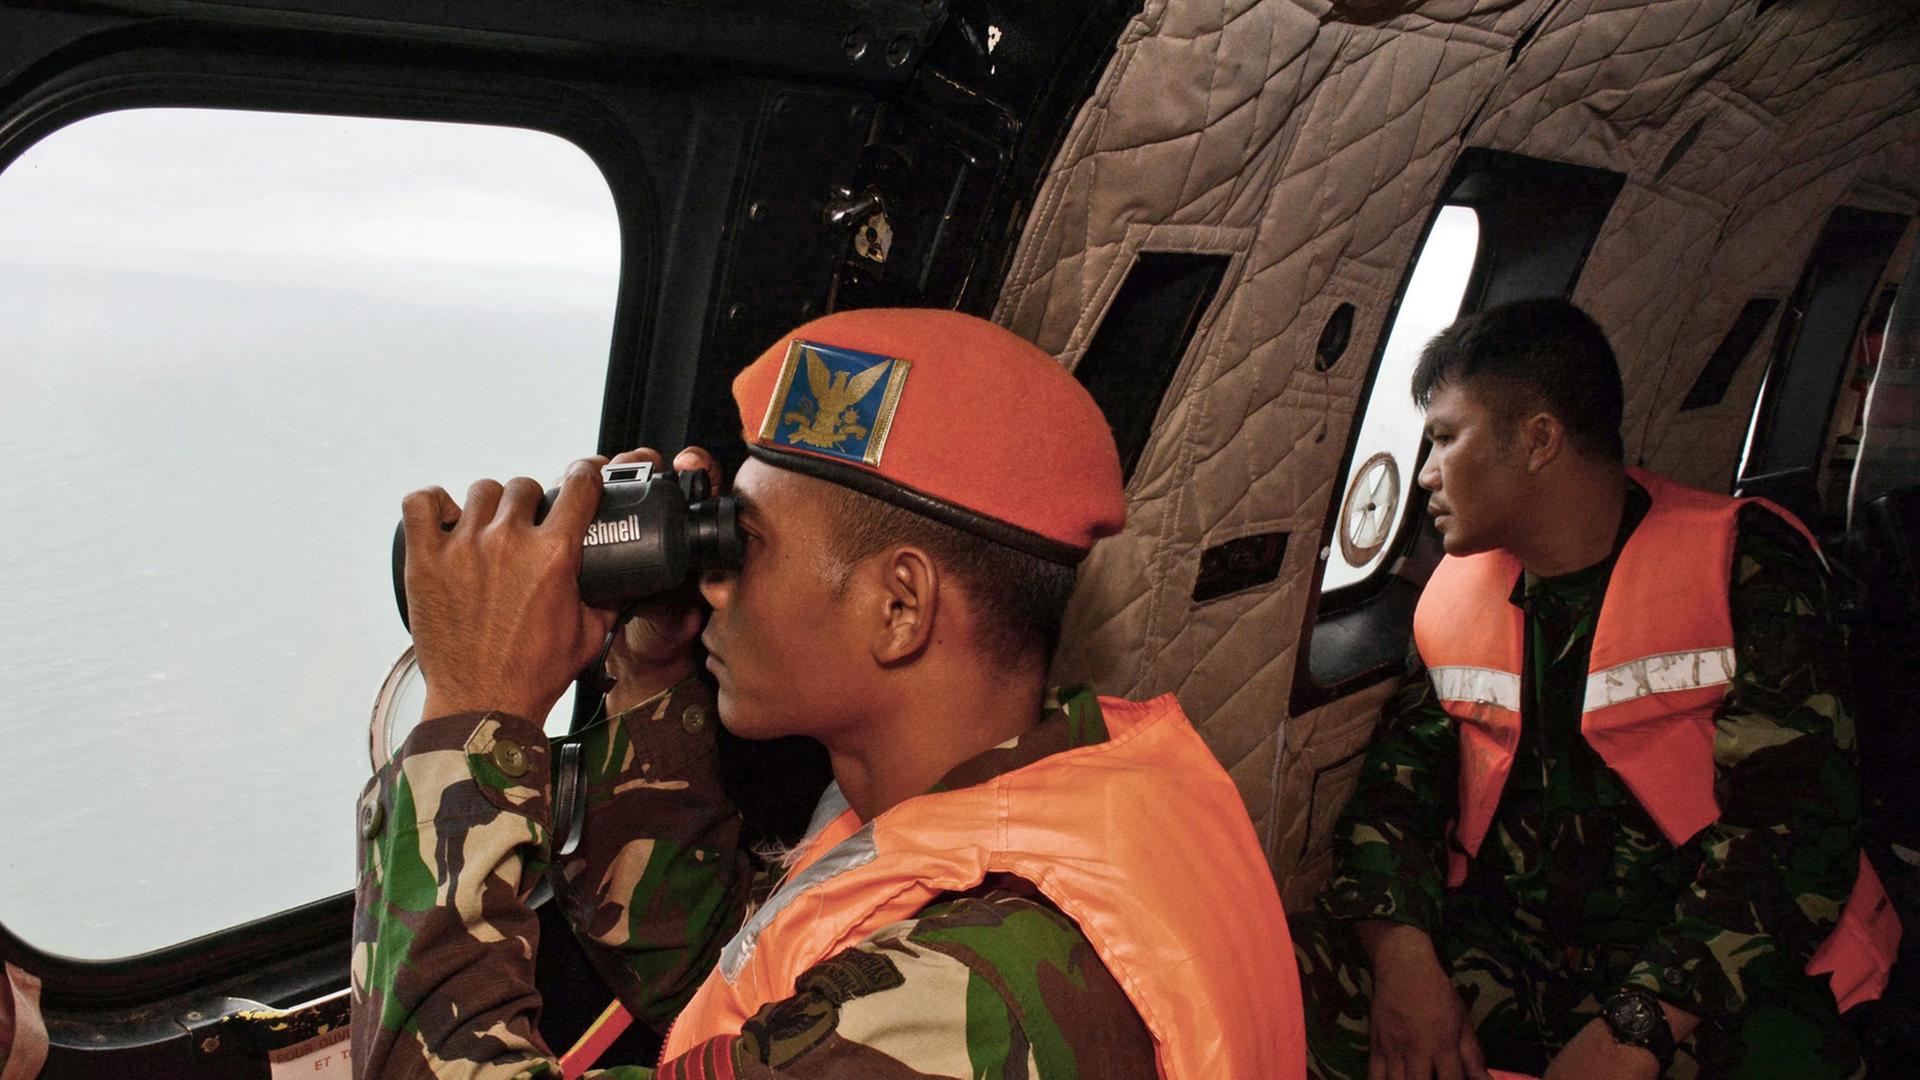 Ein indonesischer Soldat in Uniform und Schwimmweste blickt mit einem Fernrohr aus dem Fenster eines Hubschraubers.